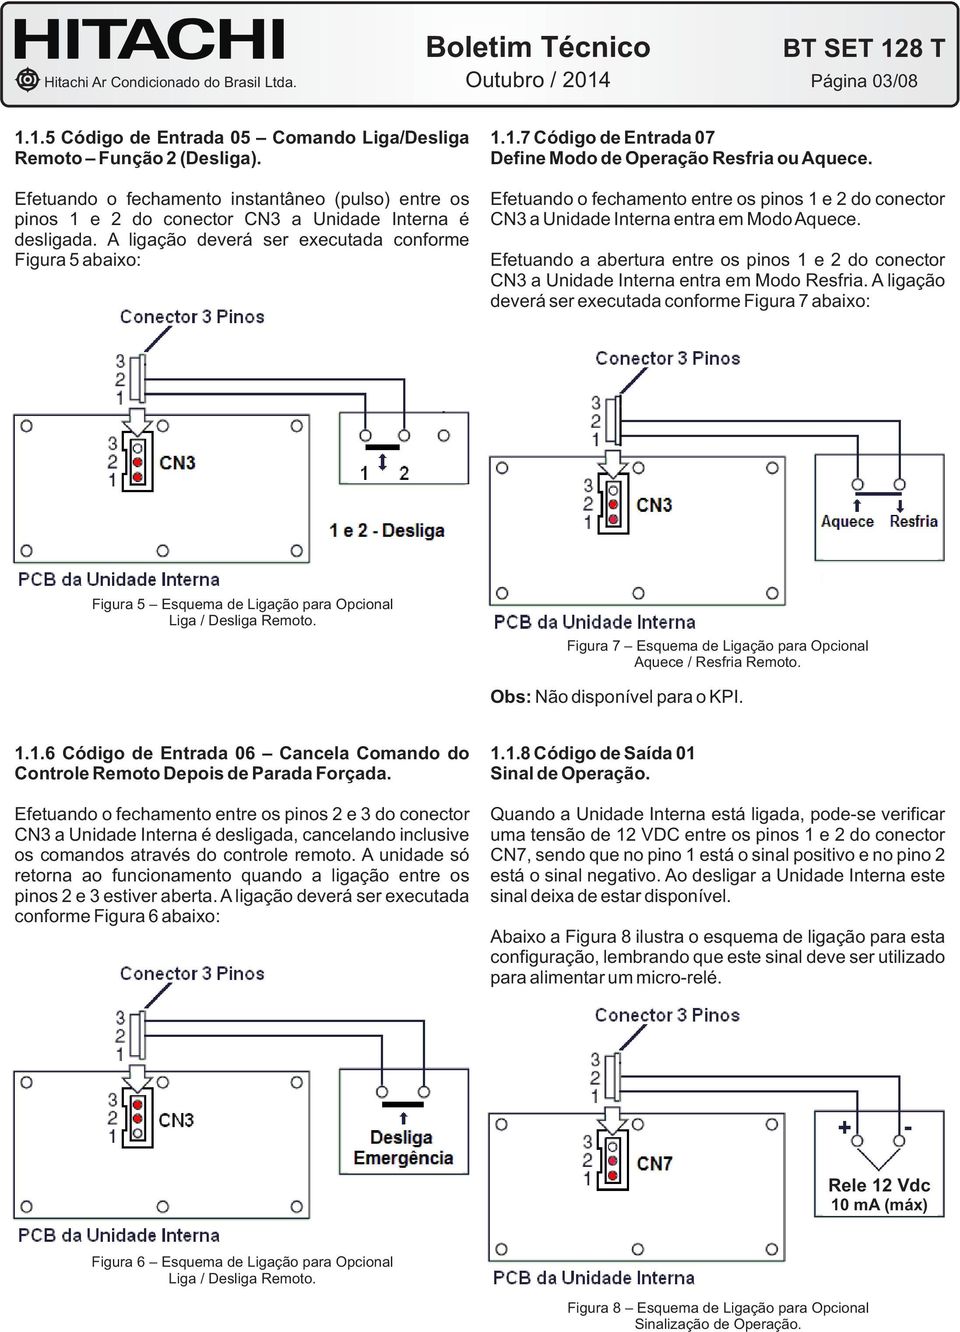 Efetuando o fechamento entre os pinos 1 e 2 do conector CN3 a Unidade Interna entra em Modo Aquece. Efetuando a abertura entre os pinos 1 e 2 do conector CN3 a Unidade Interna entra em Modo Resfria.